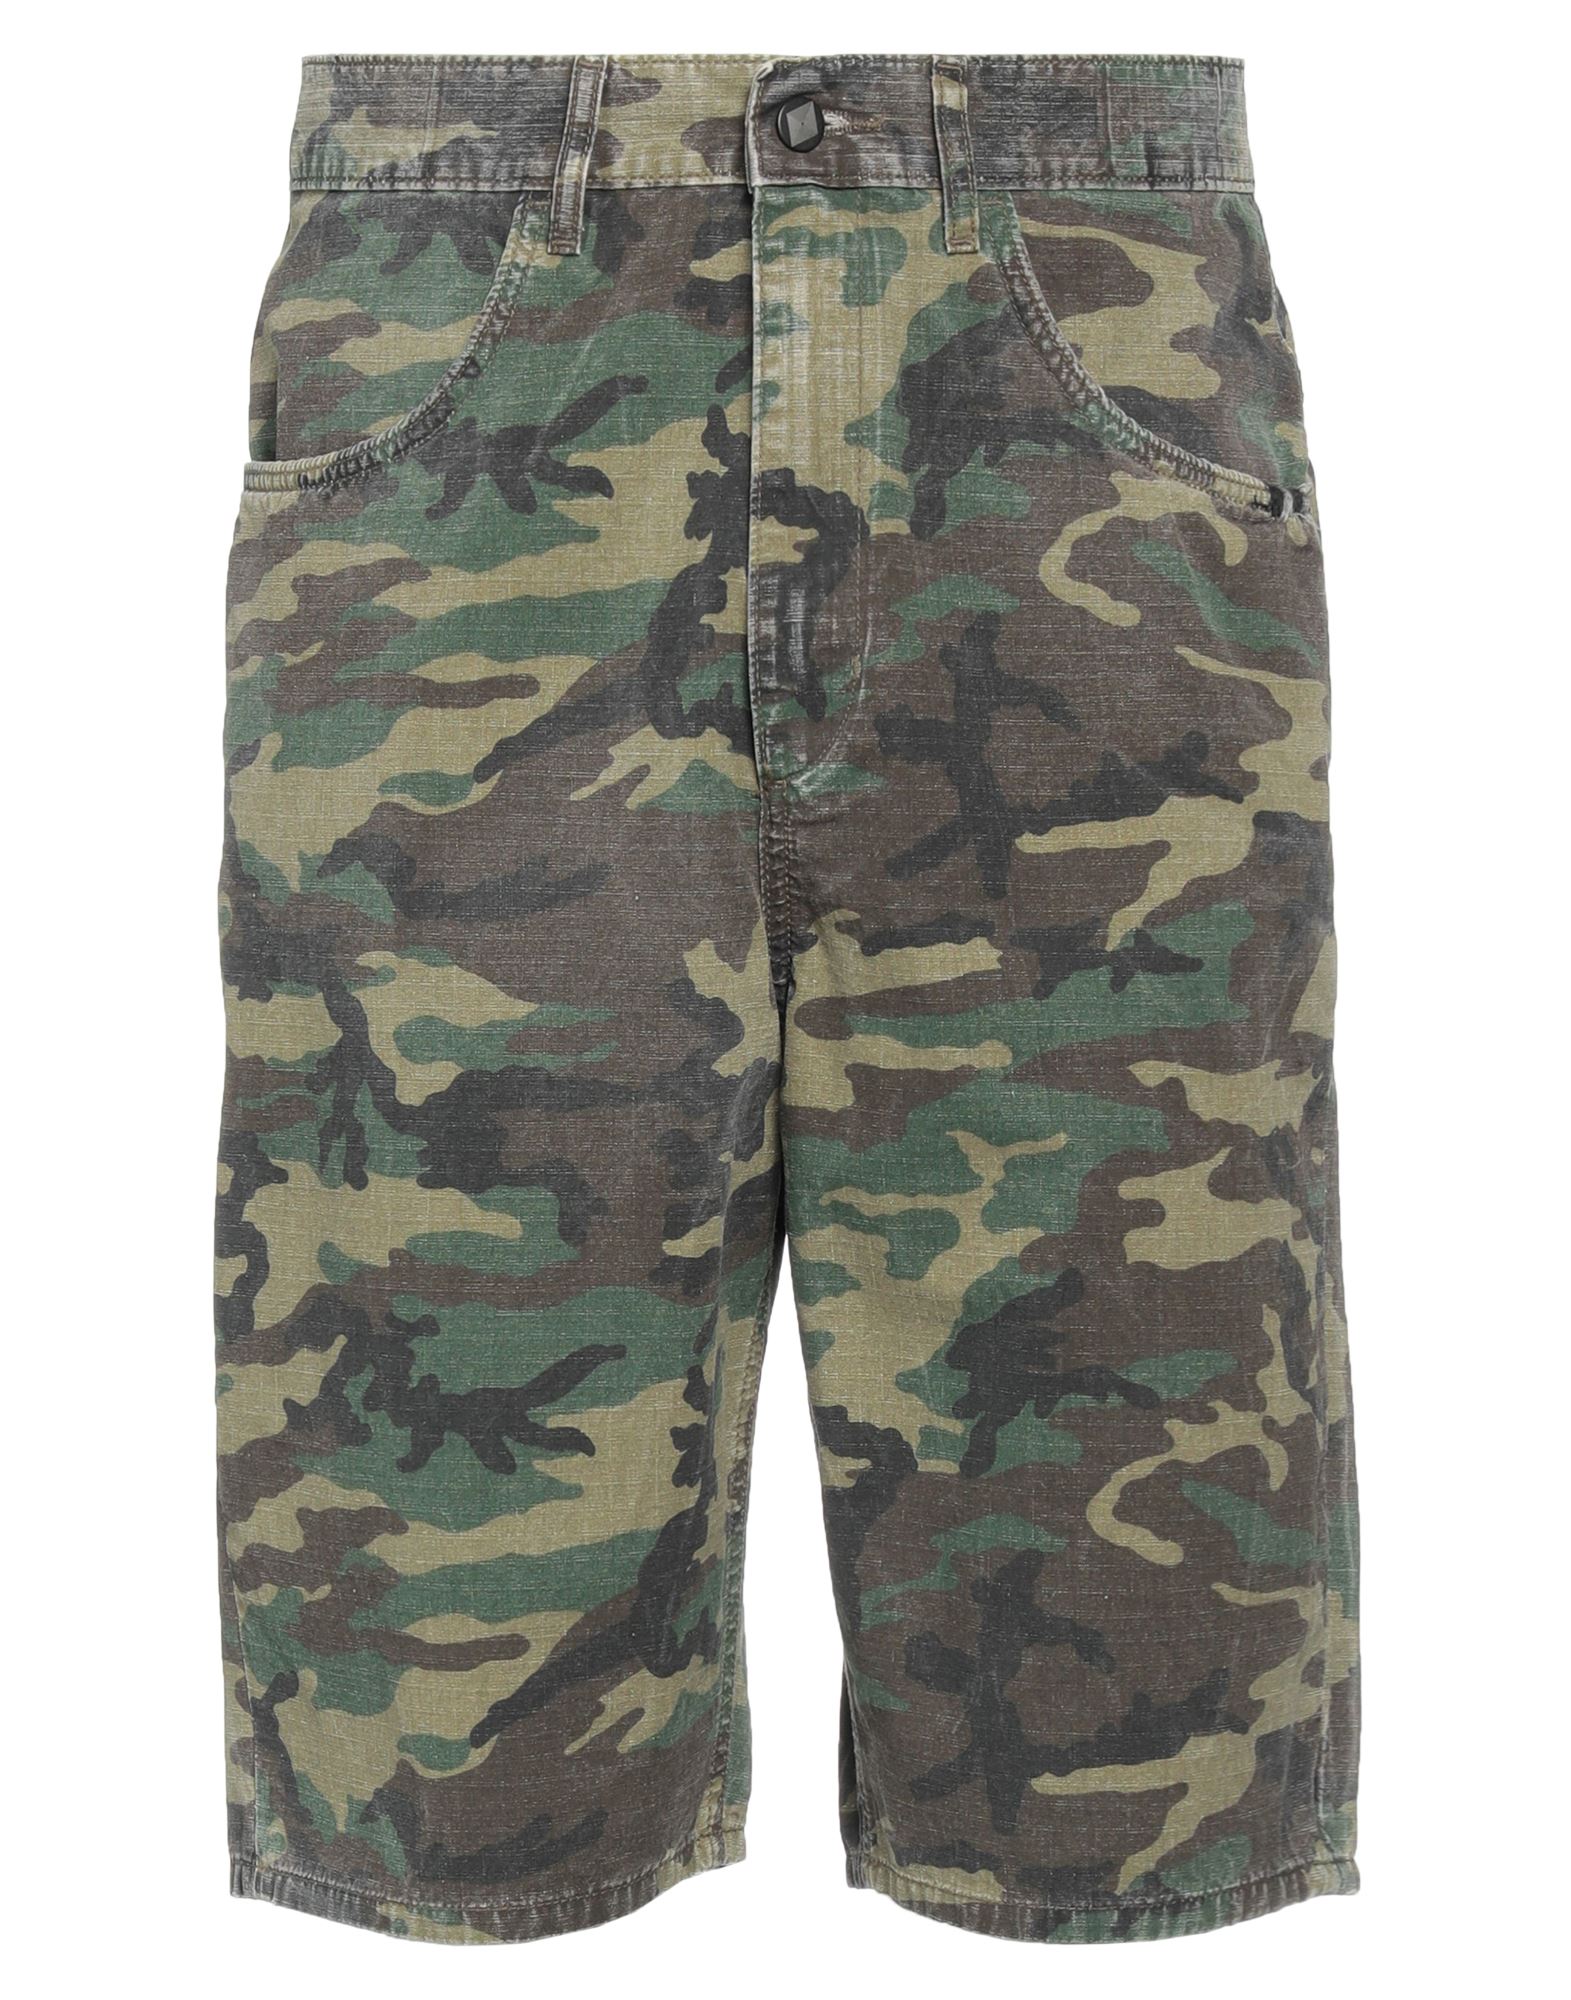 Amish Man Shorts & Bermuda Shorts Military Green Size 30 Cotton